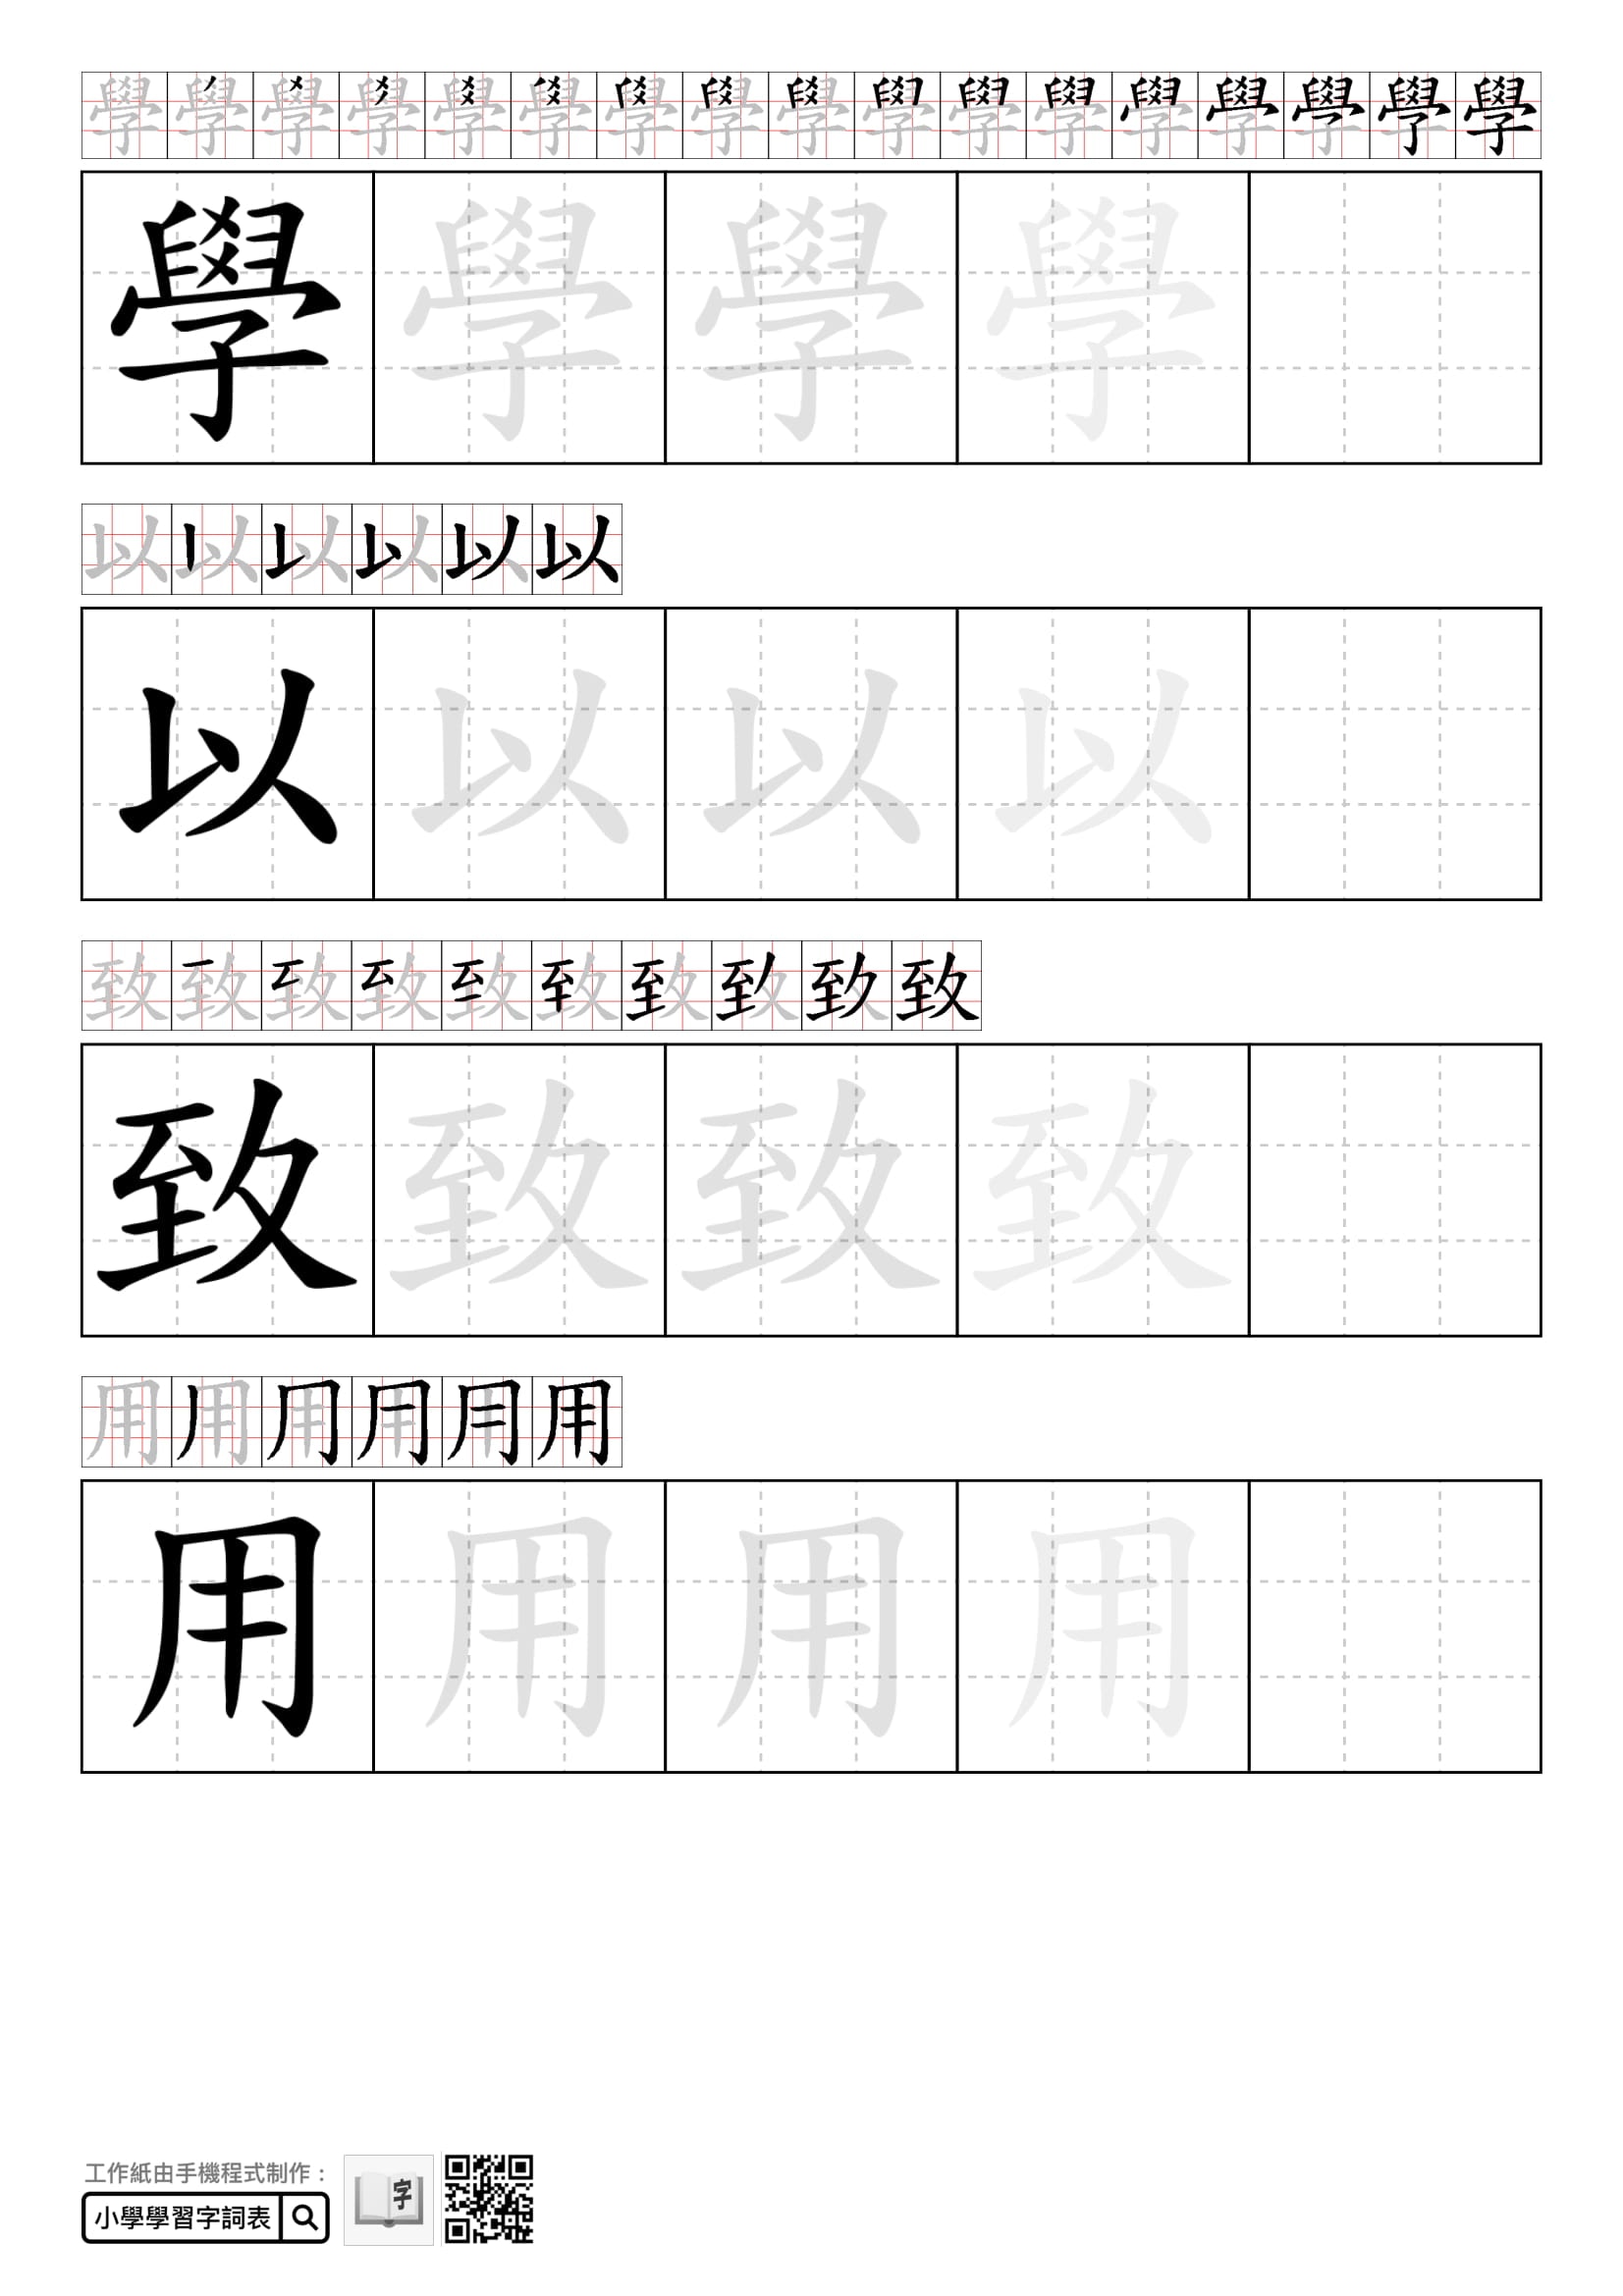 小朋友學數學 幼稚園免費工作紙寫數字 學圖形及簡易加法 香港01 親子